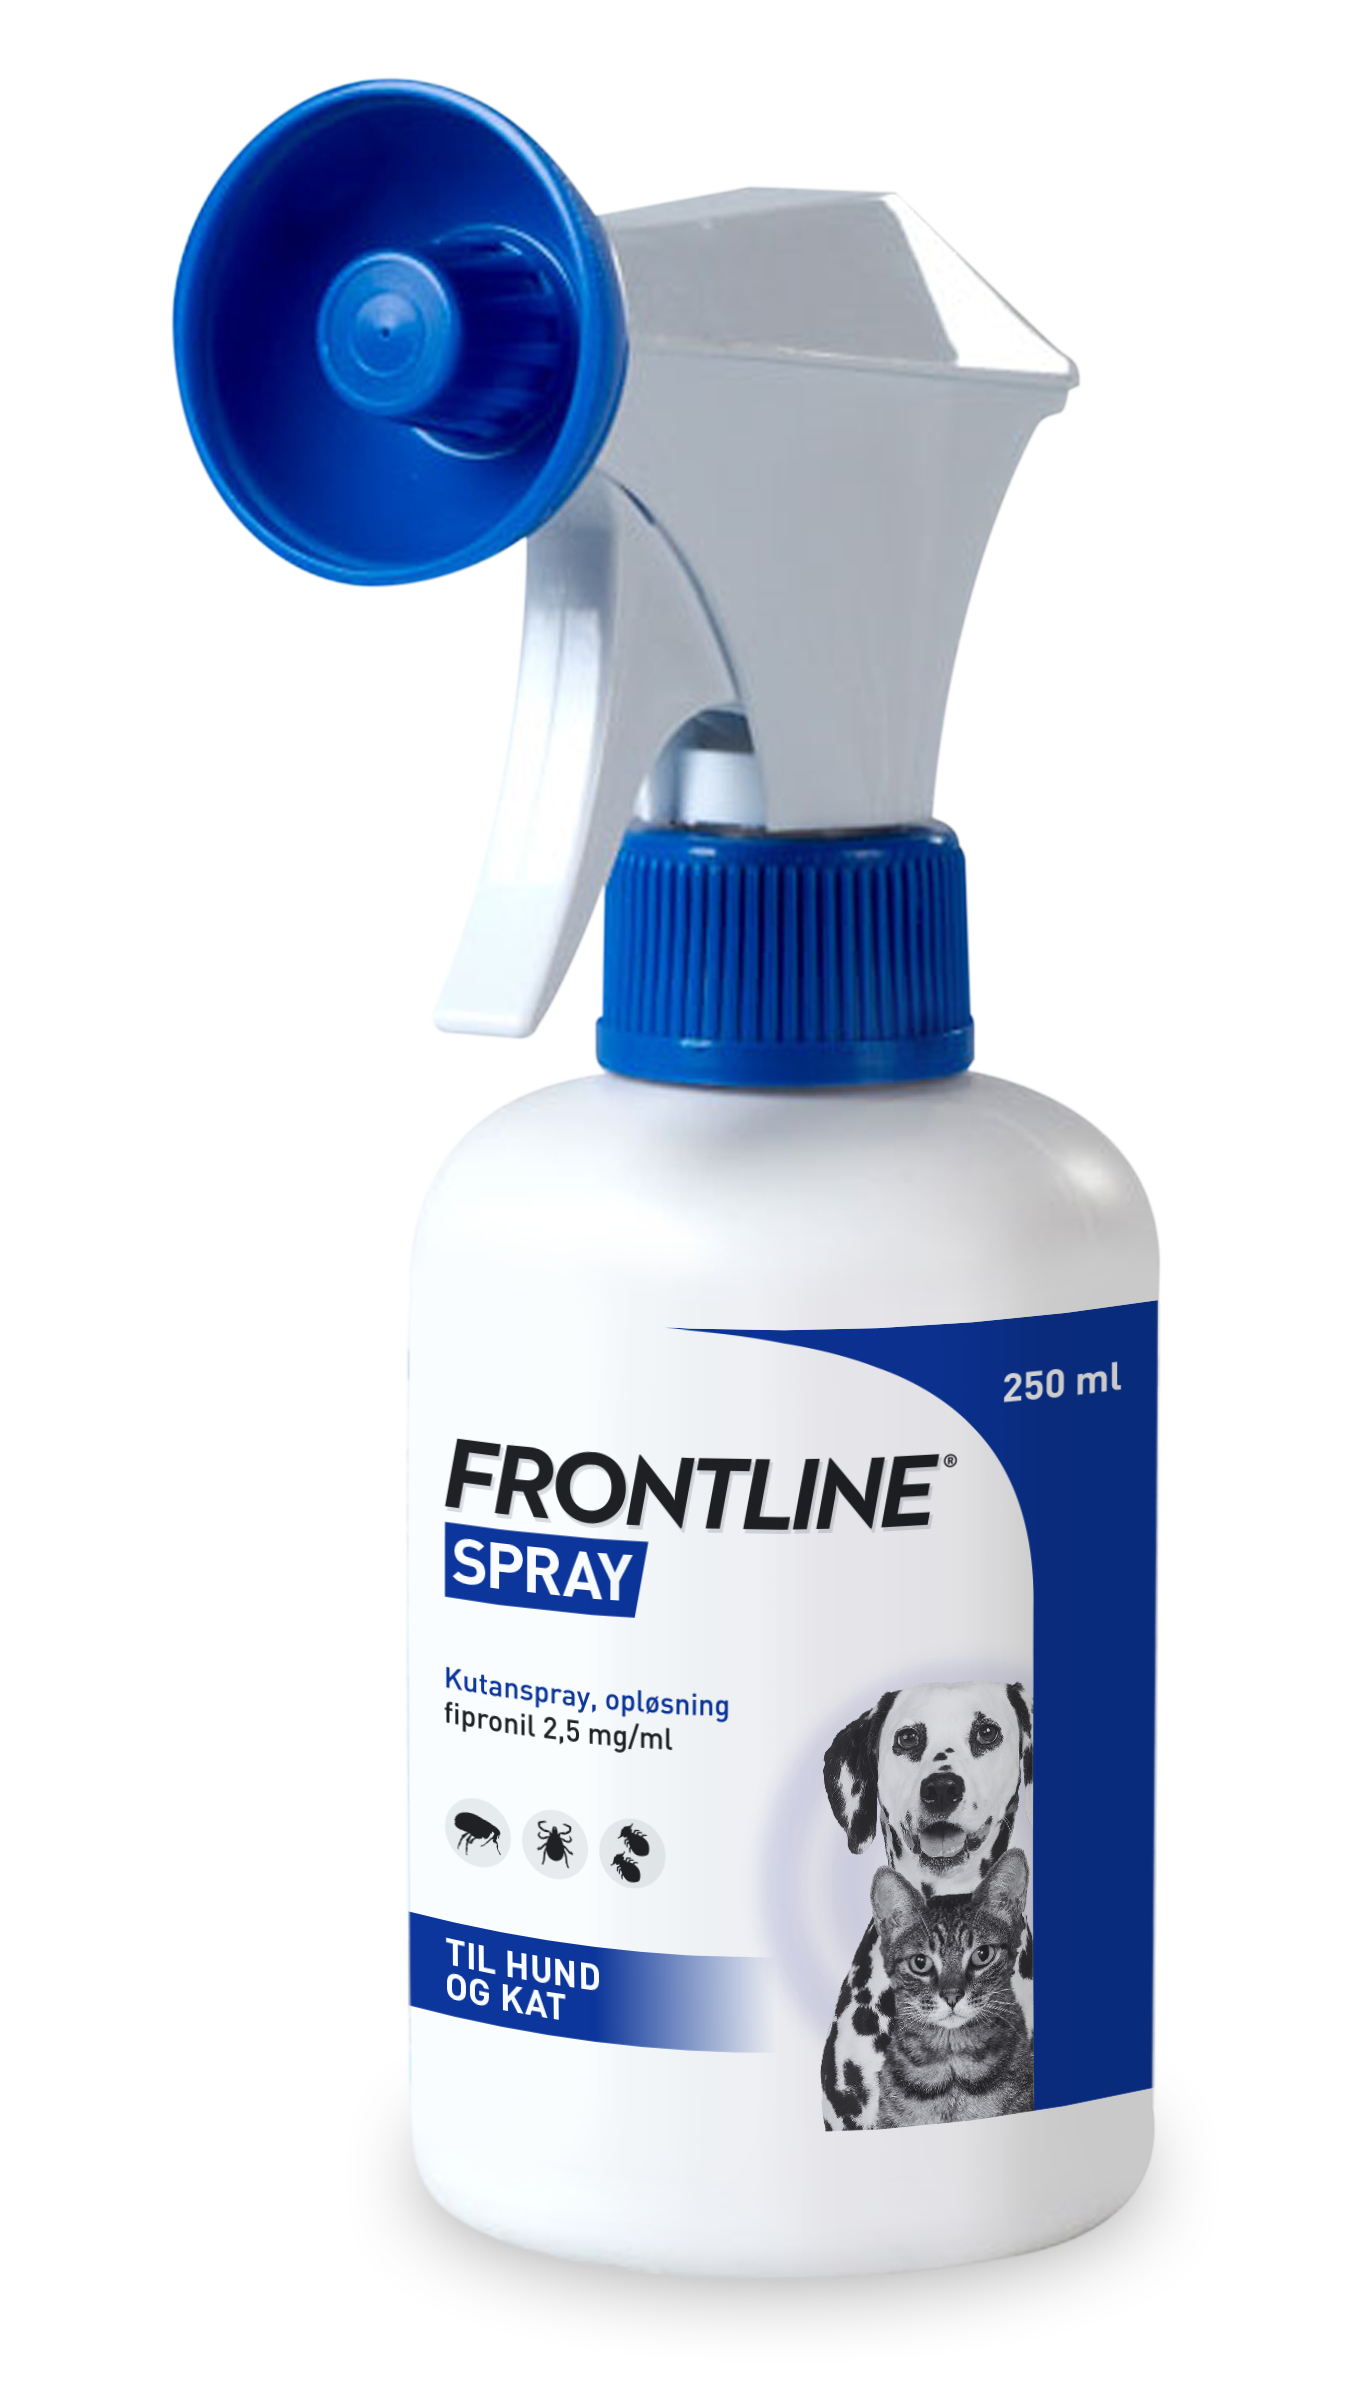 auditorium Componist Derde Frontline spray 250 ml